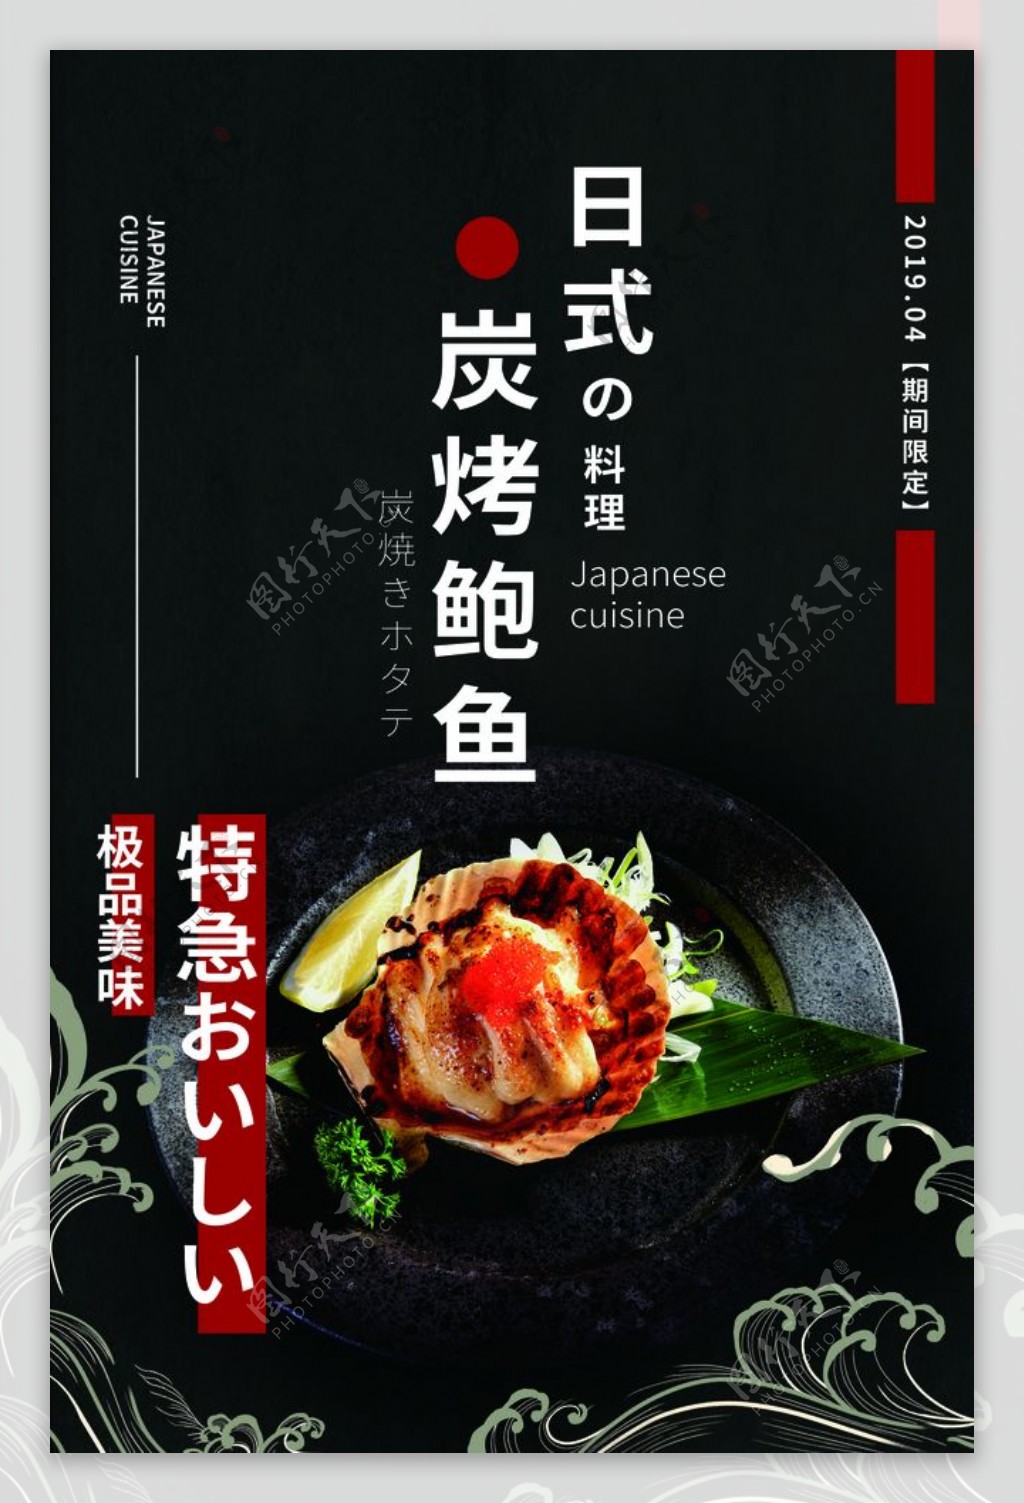 日式炭烤鲍鱼美食活动宣传海报图片